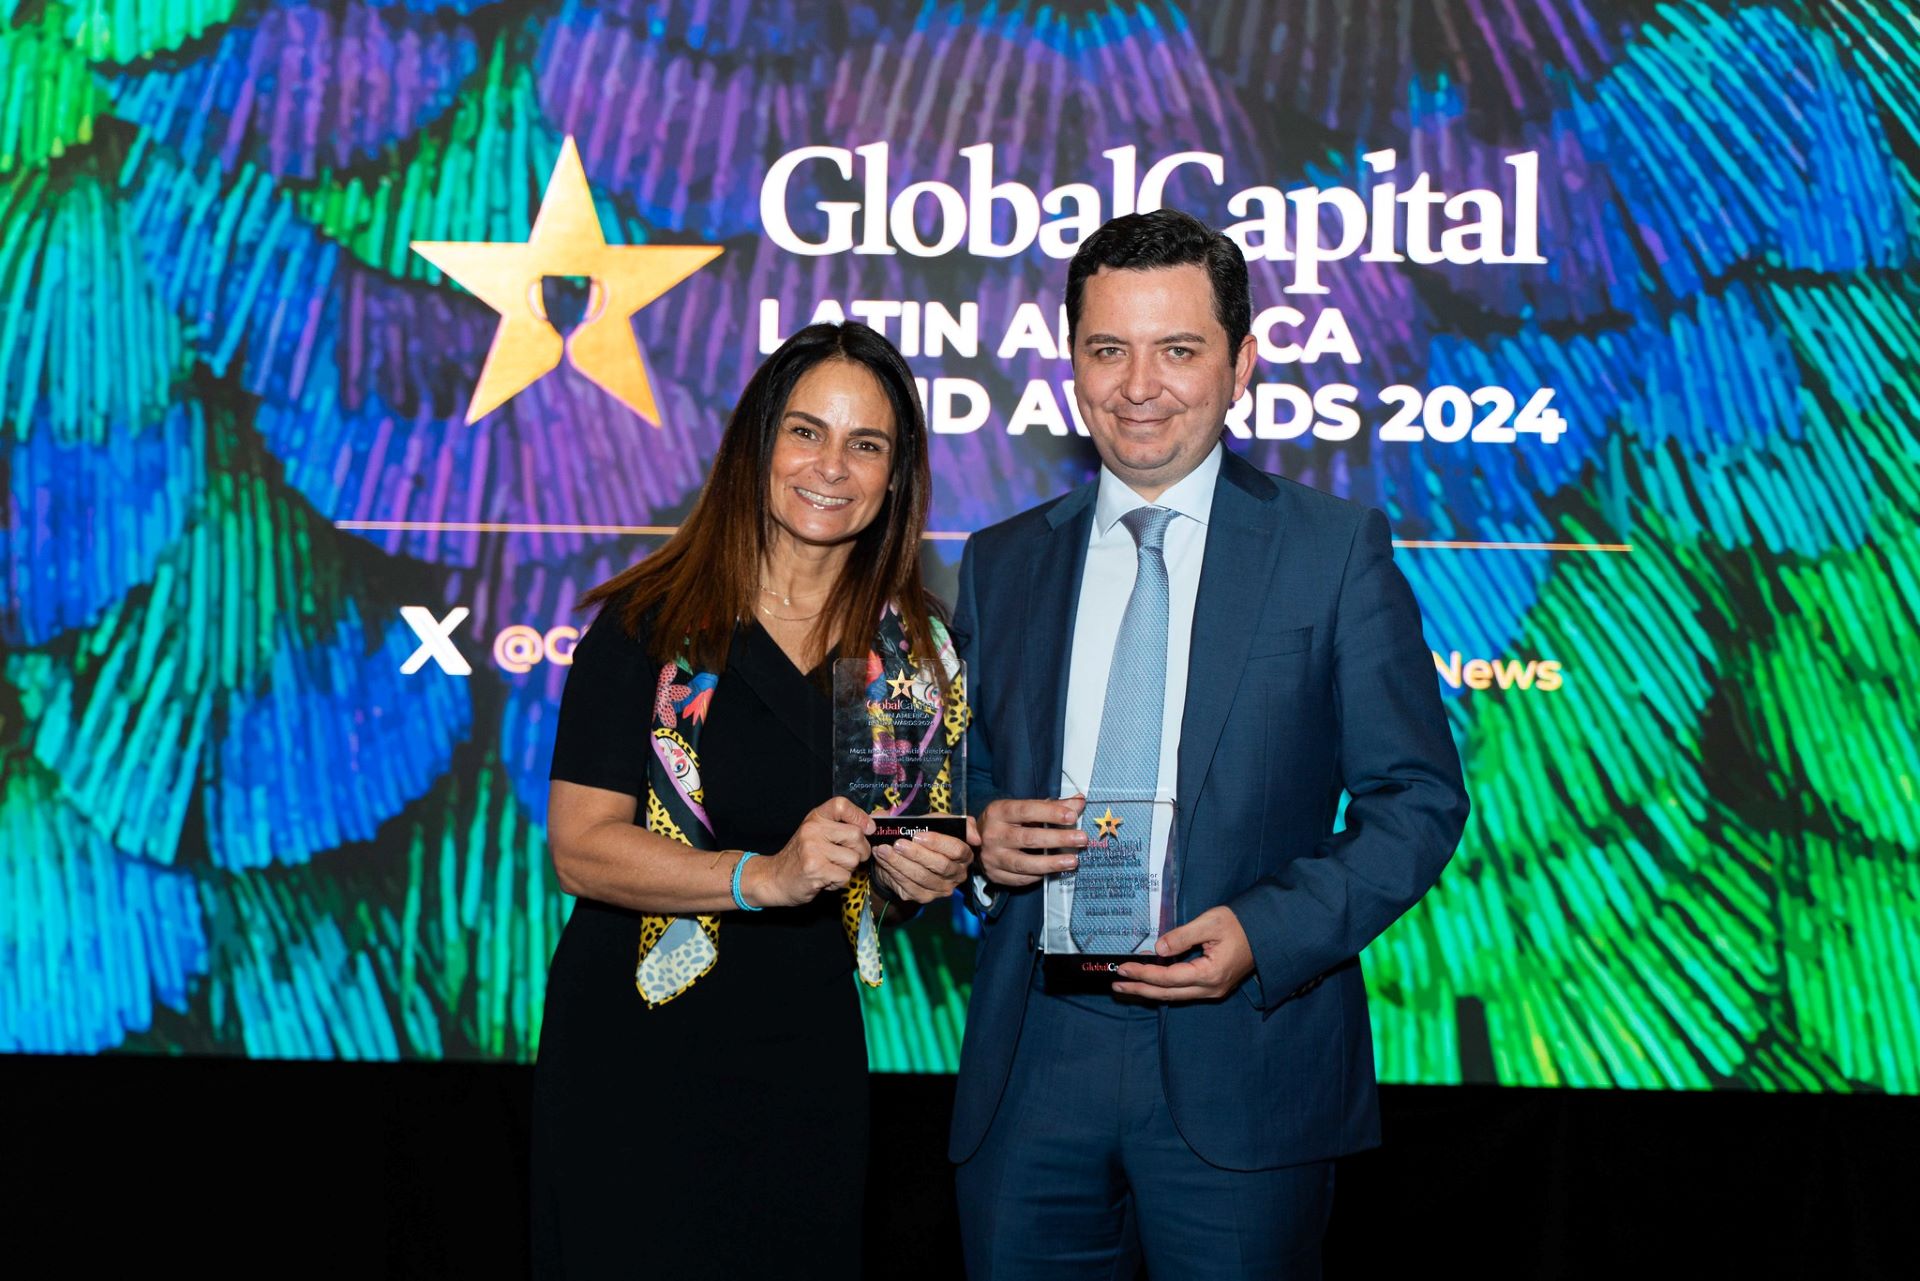 A CAF recebe dois prêmios da Global Capital por emissões bem-sucedidas